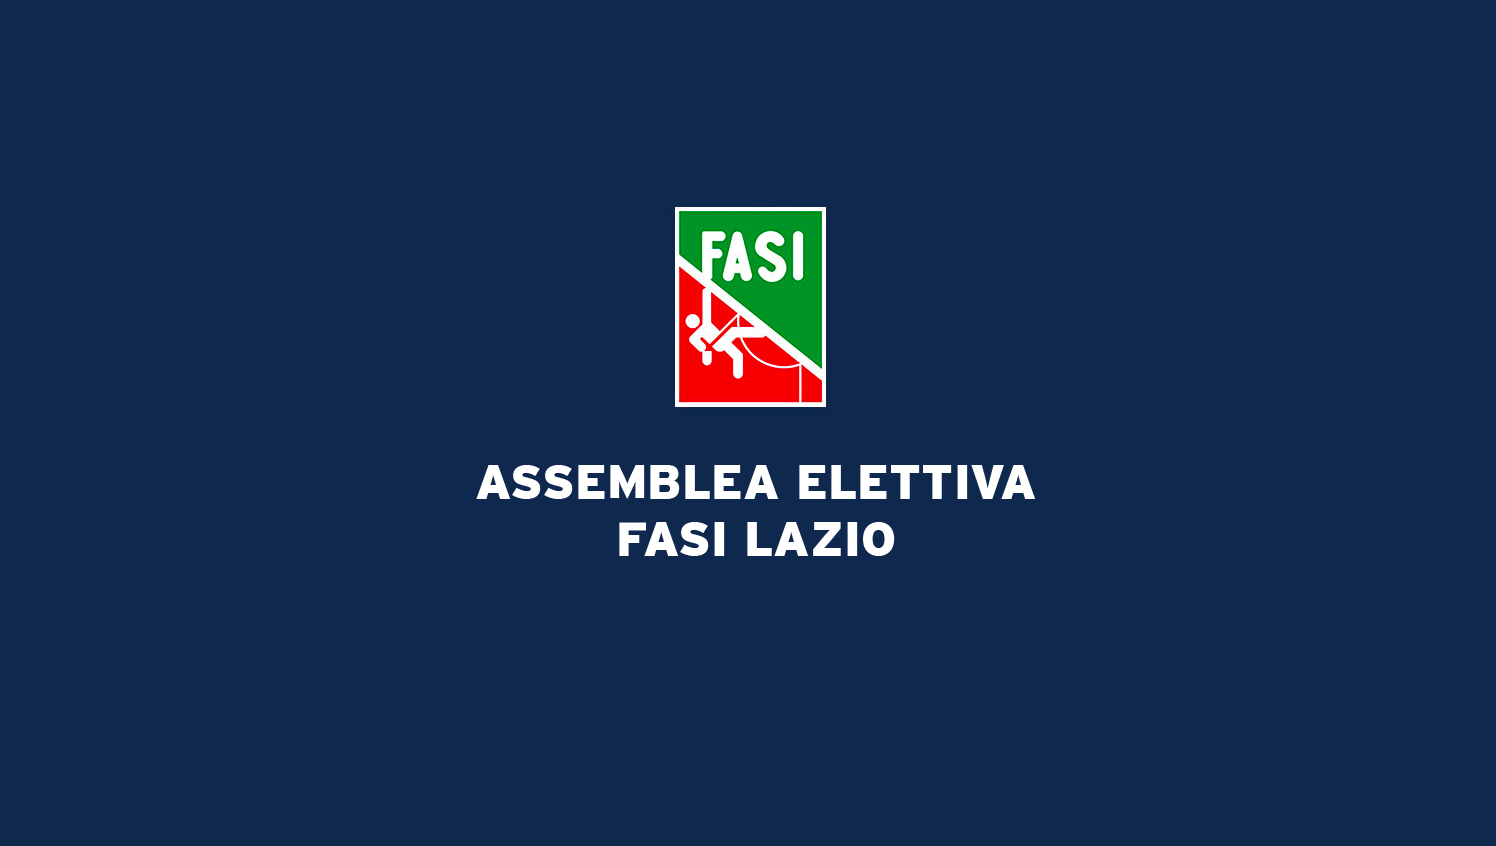 images/Comitati-Regionali/lazio/ASSEMBLEA_ELETTIVA_FASI_LAZIO.jpg